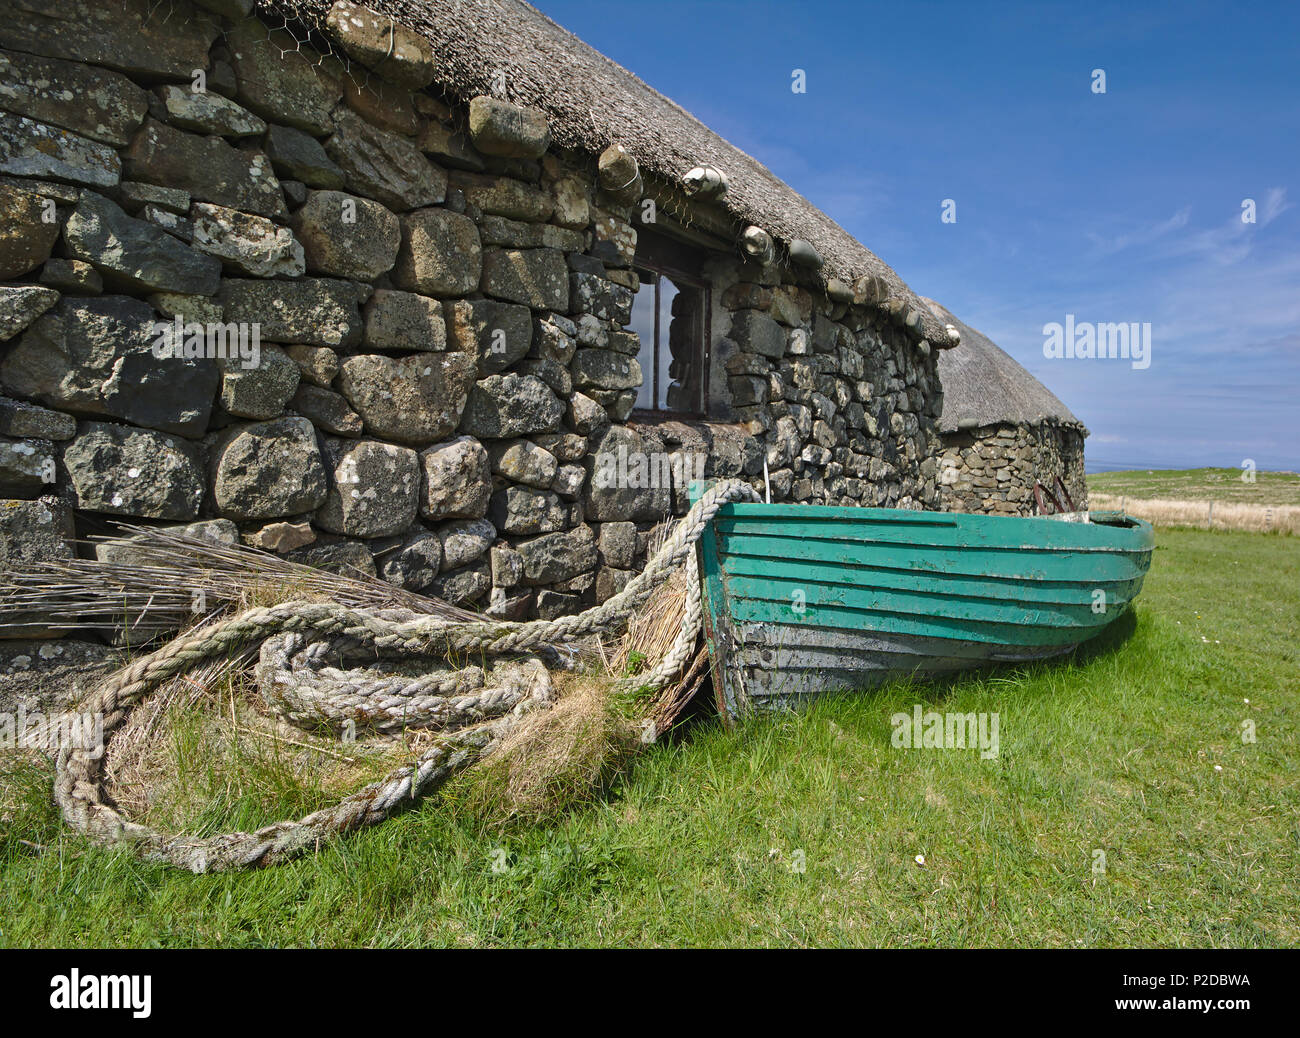 Hebridean blackhouse tradicionales con techo de paja, embarcación pesquera de madera y cuerda enrollada. Foto de stock